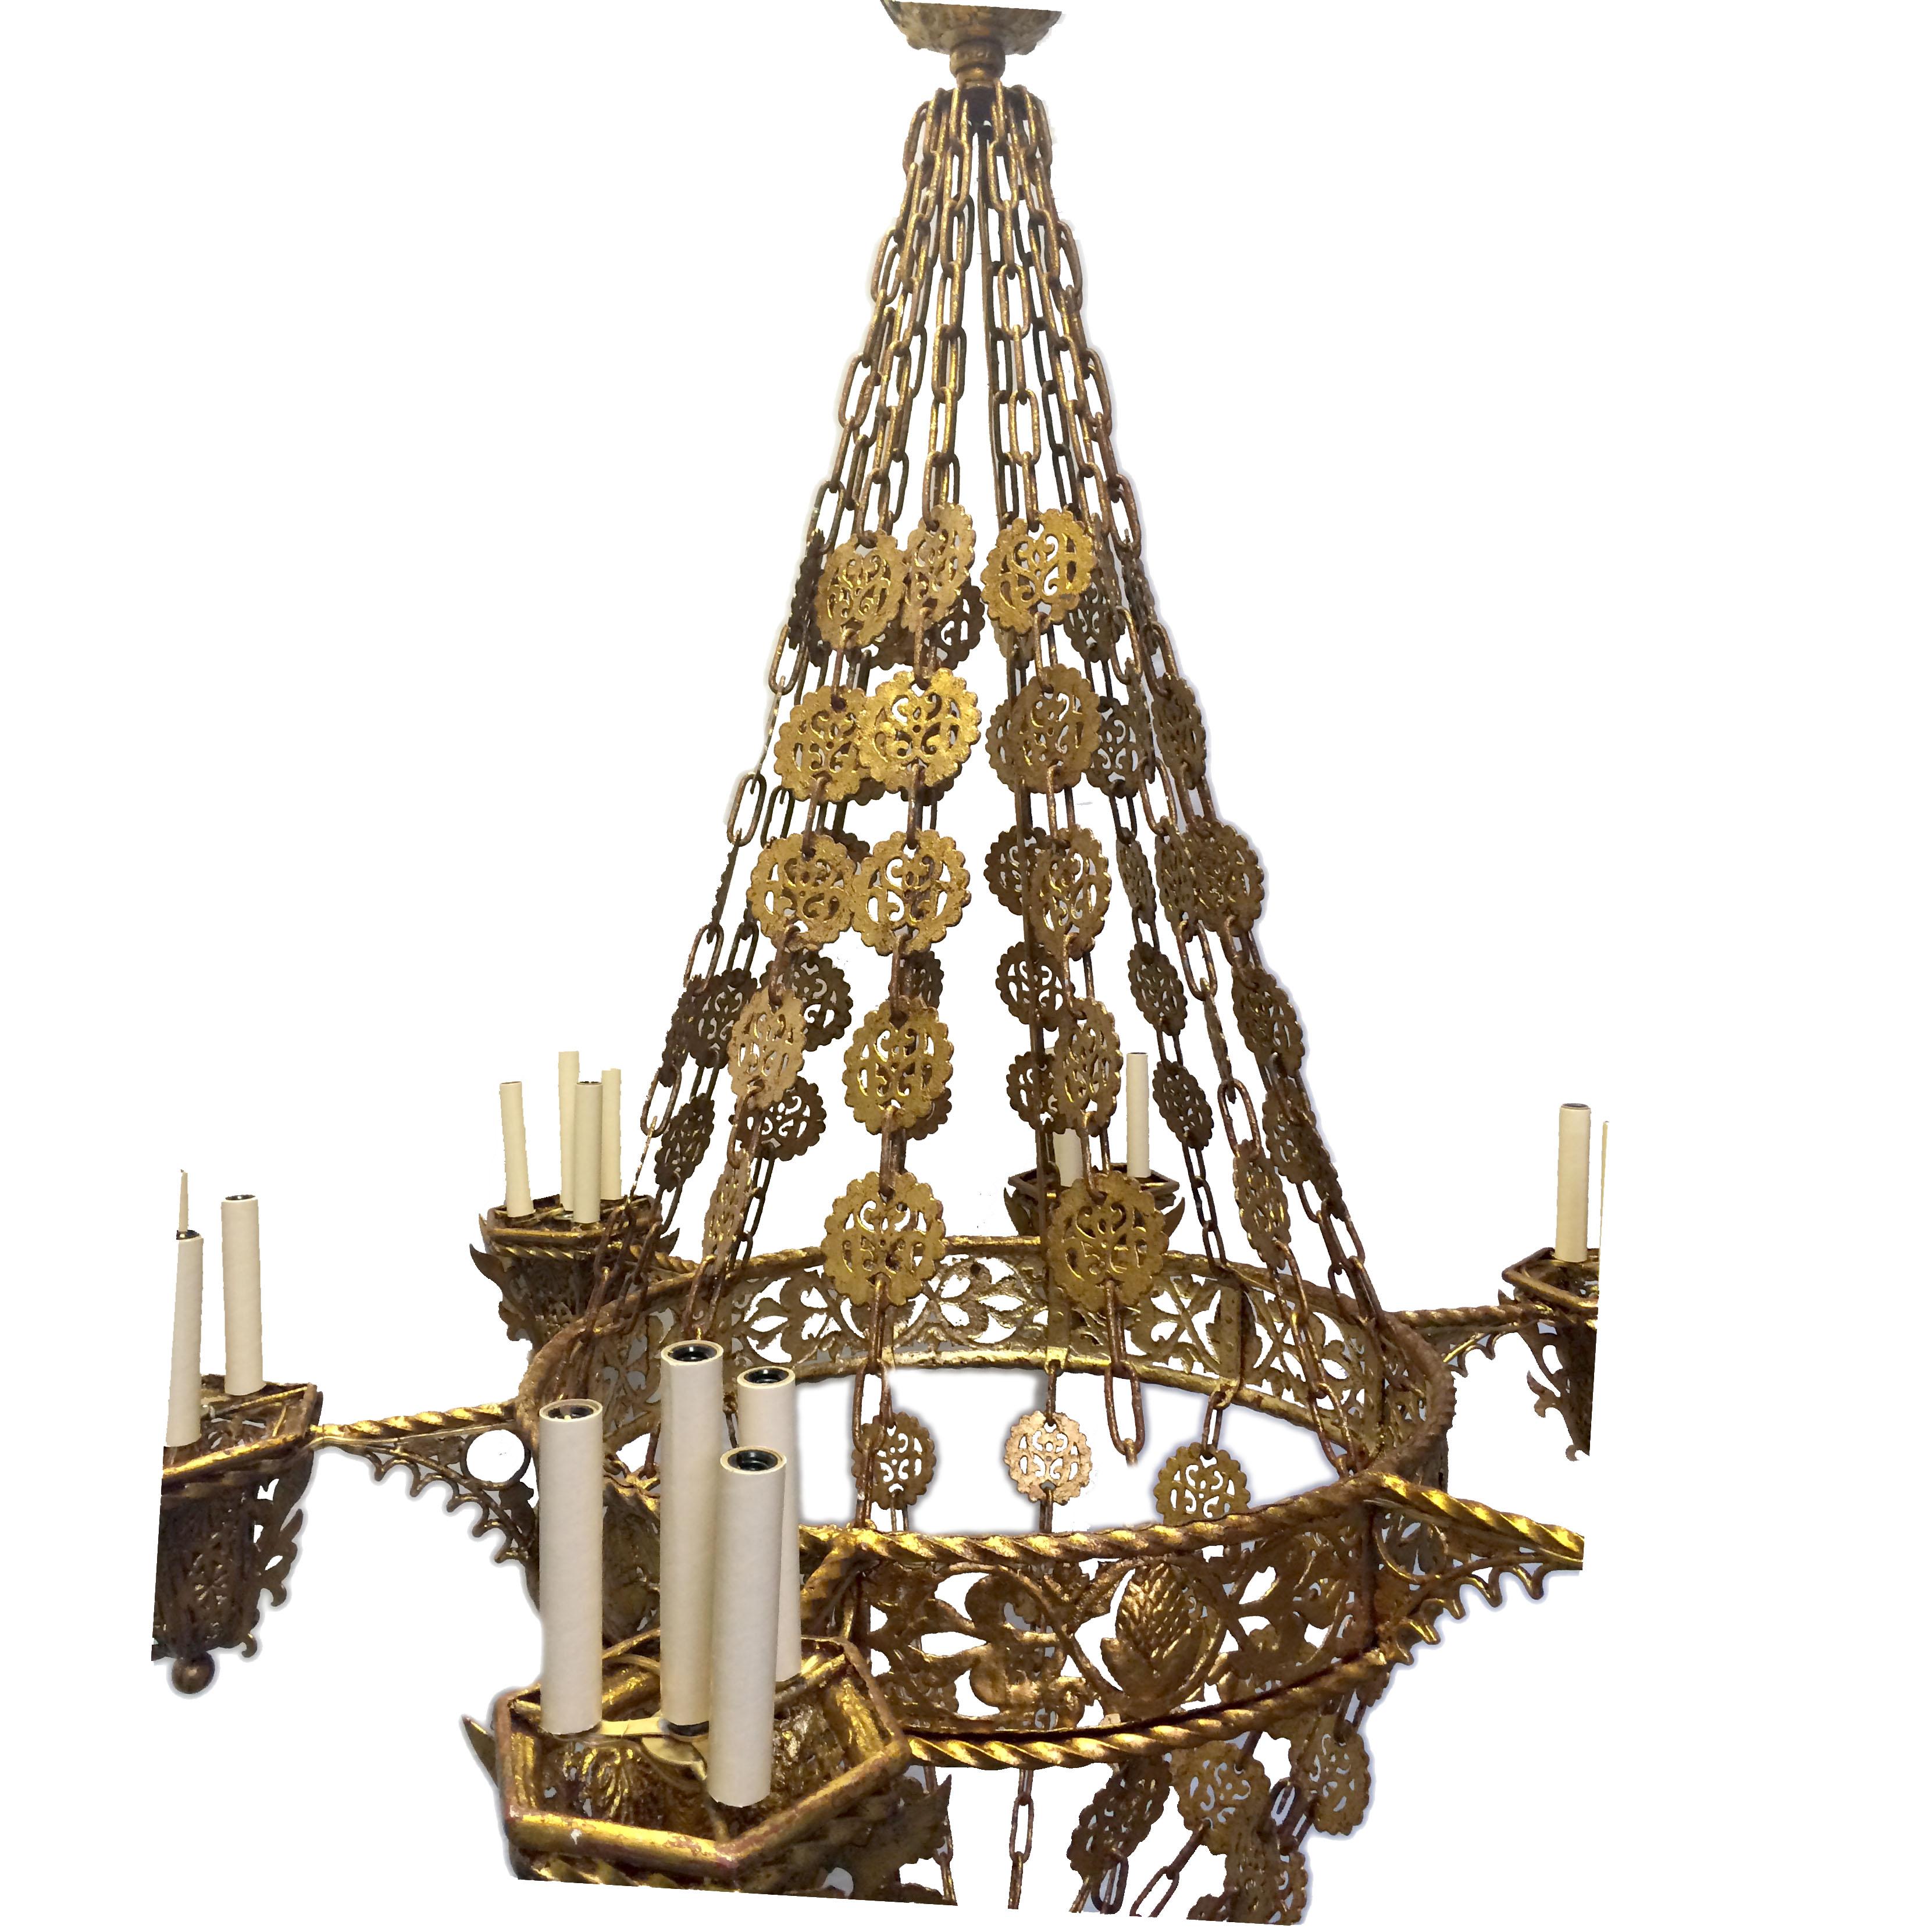 Ein großer spanischer vergoldeter Metallkronleuchter mit fünfzehn Lichtern um 1900 mit seltener übergroßer Medaillonkette und originaler Patina.
 
Abmessungen:
Durchmesser 48?
Stromausfall 70?
  